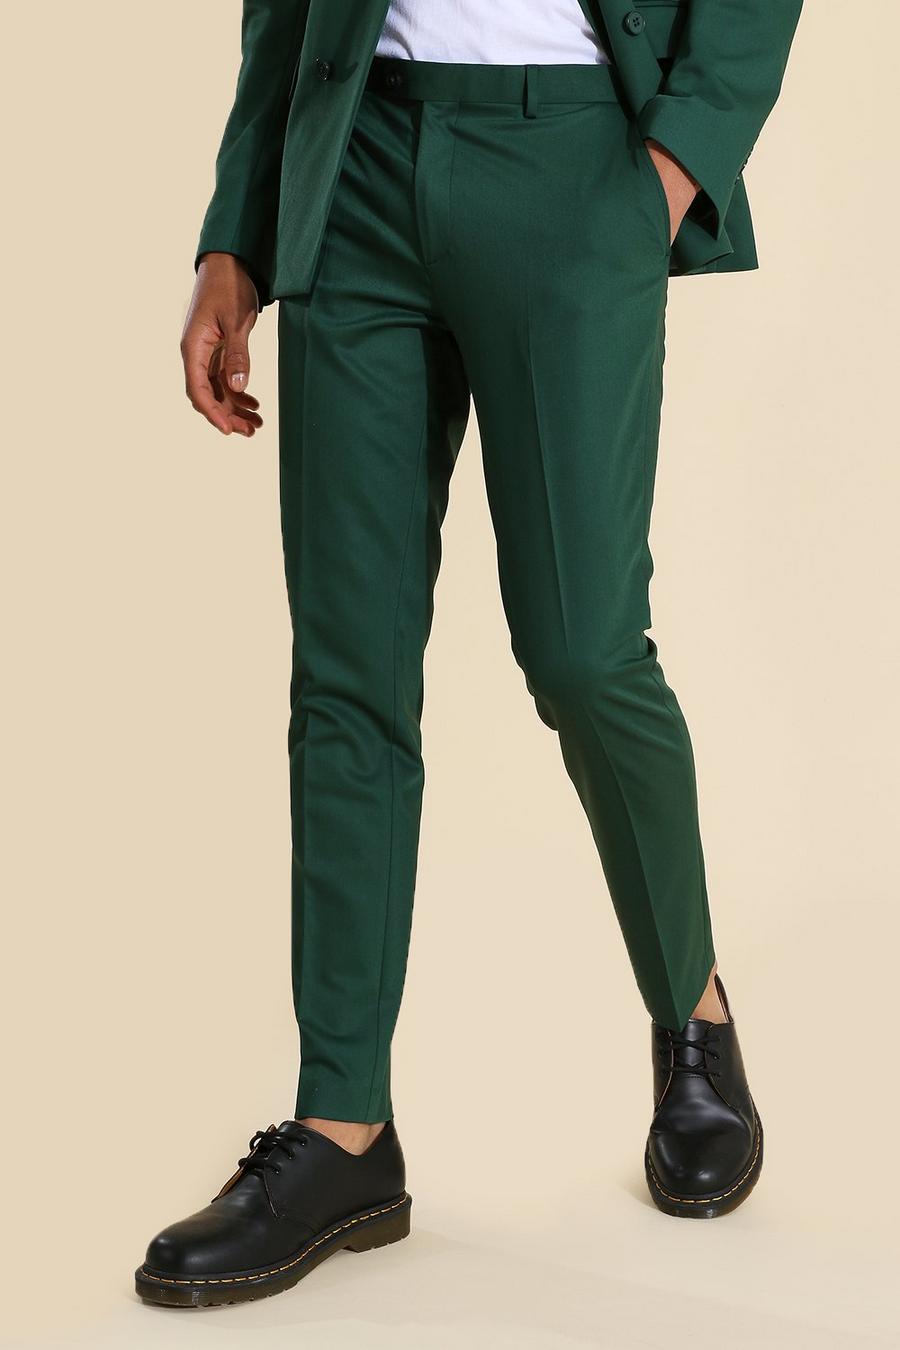 Men Elegant Green Pant Office Formal Wear Trouser Gift For Men Green  Trousers Groomsmen Gift